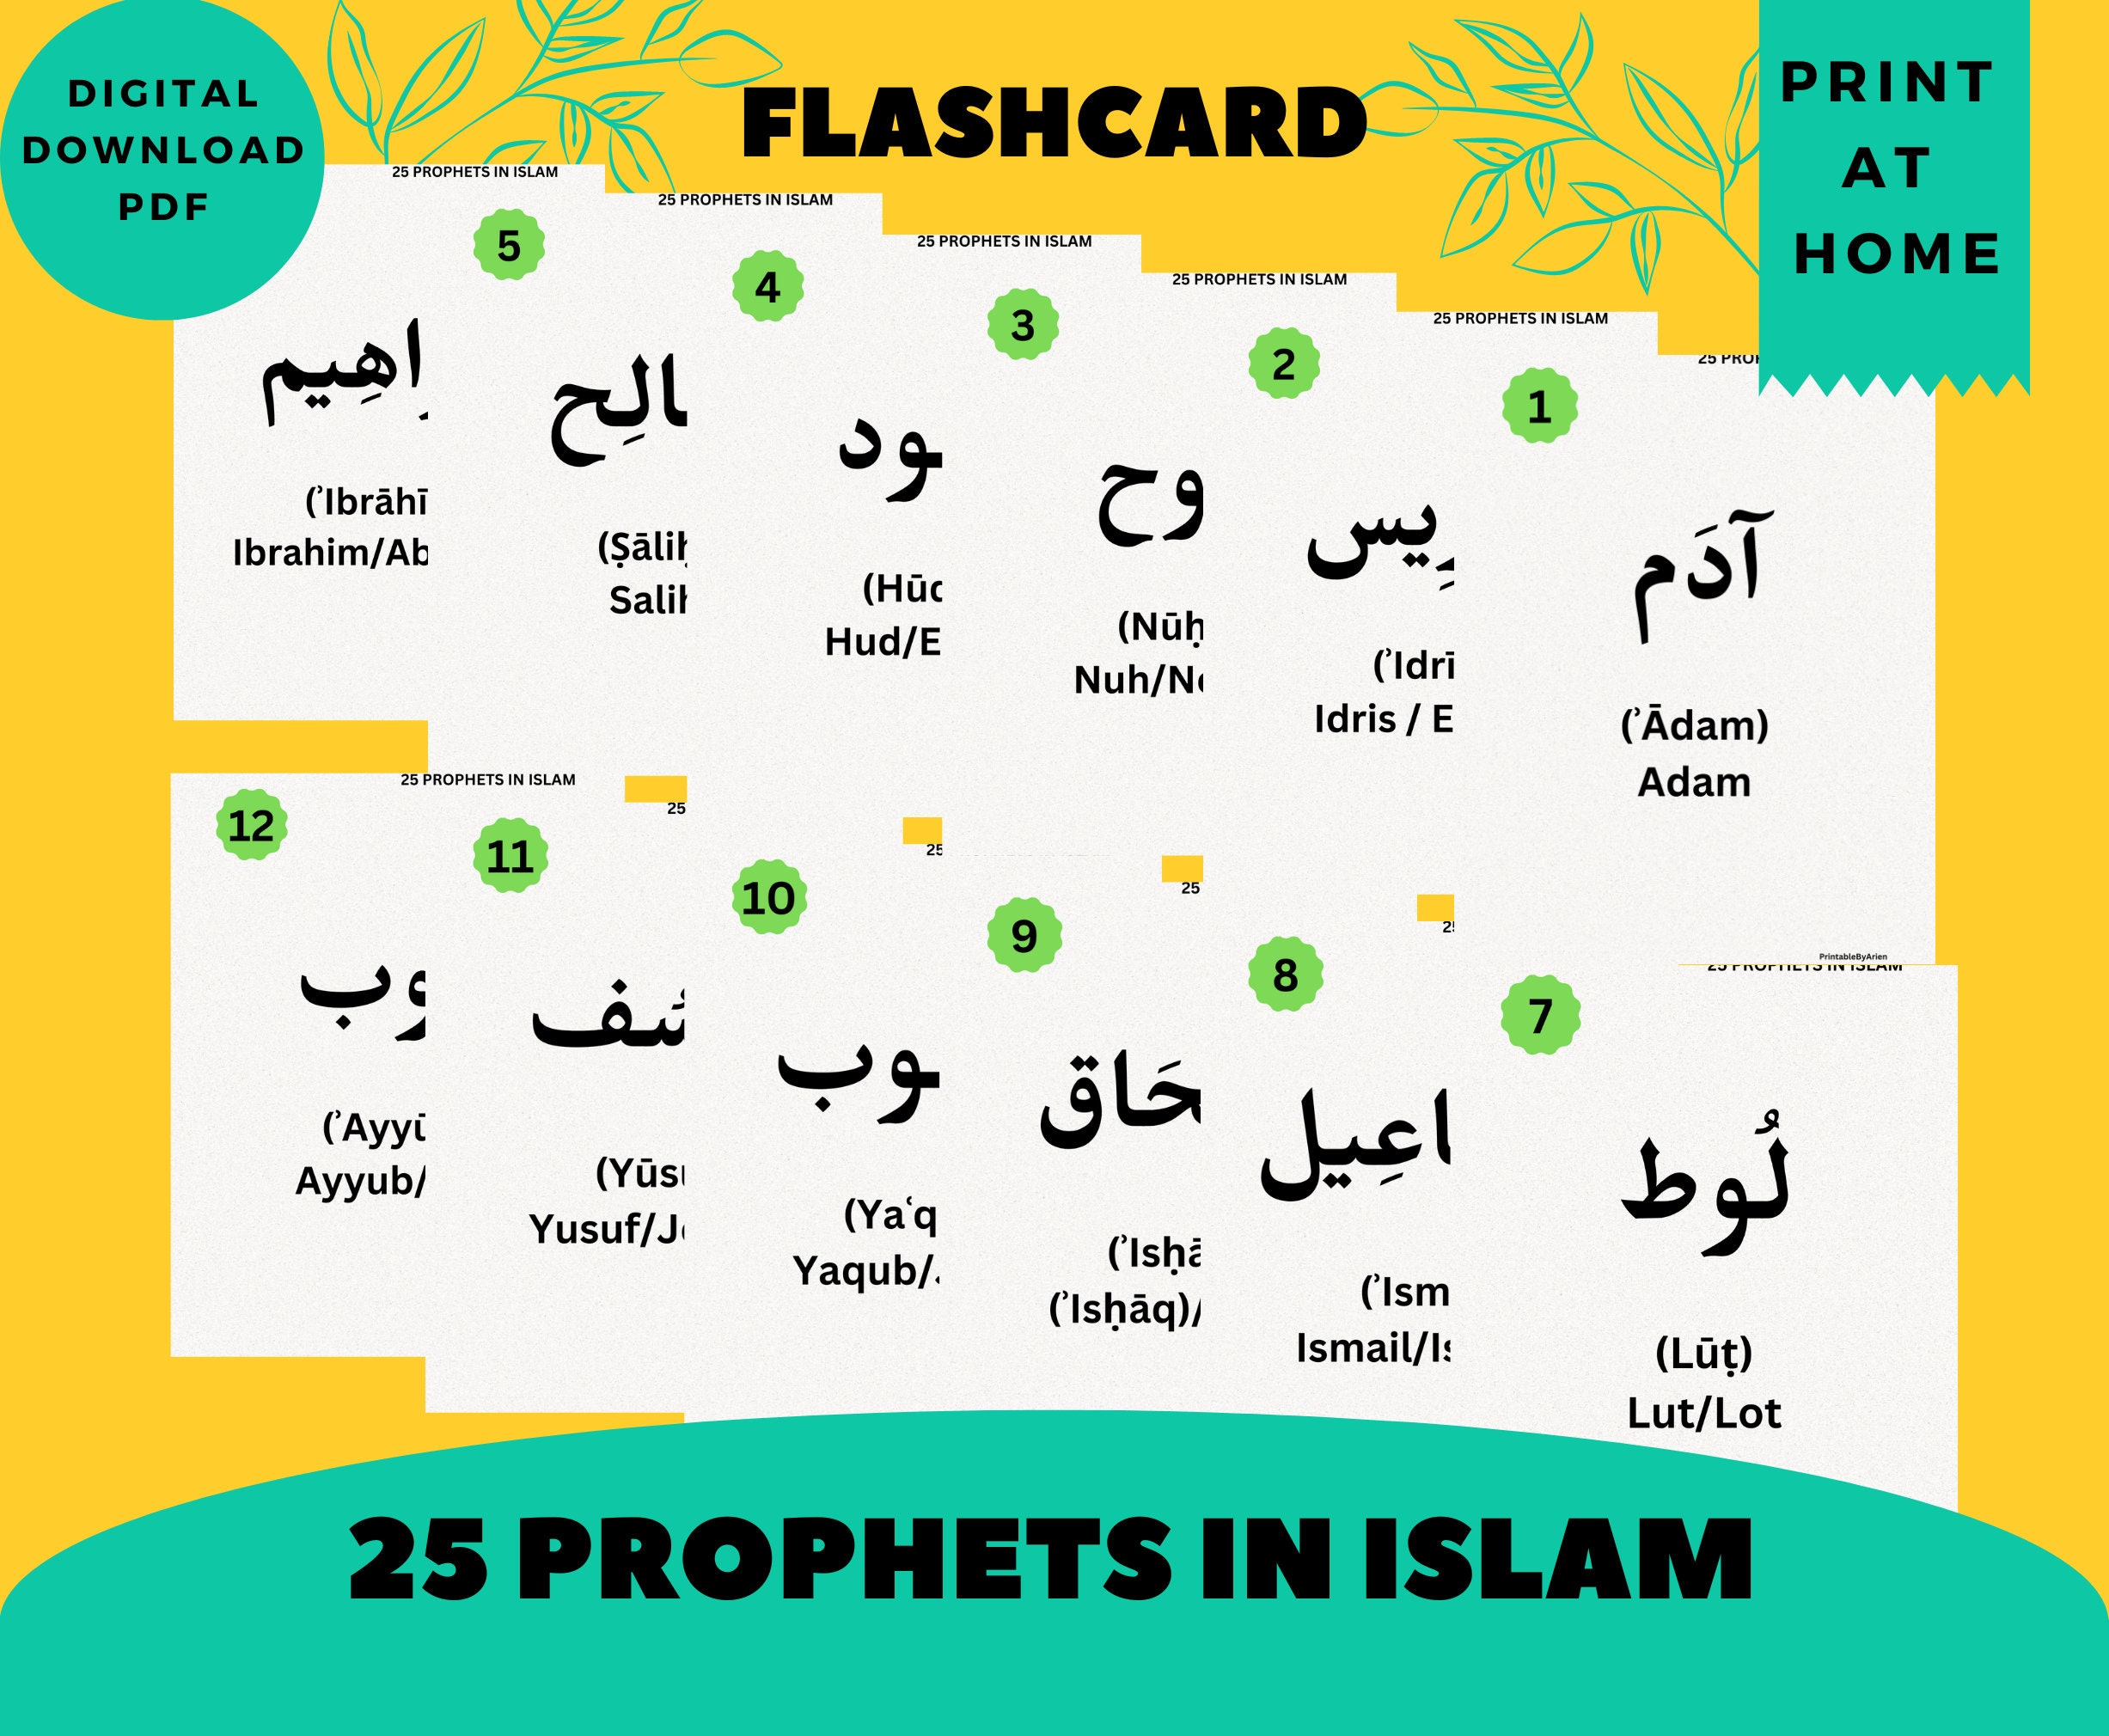 Cartes parlantes flash Dispo sur le site muslim-creation.com #muslimcr